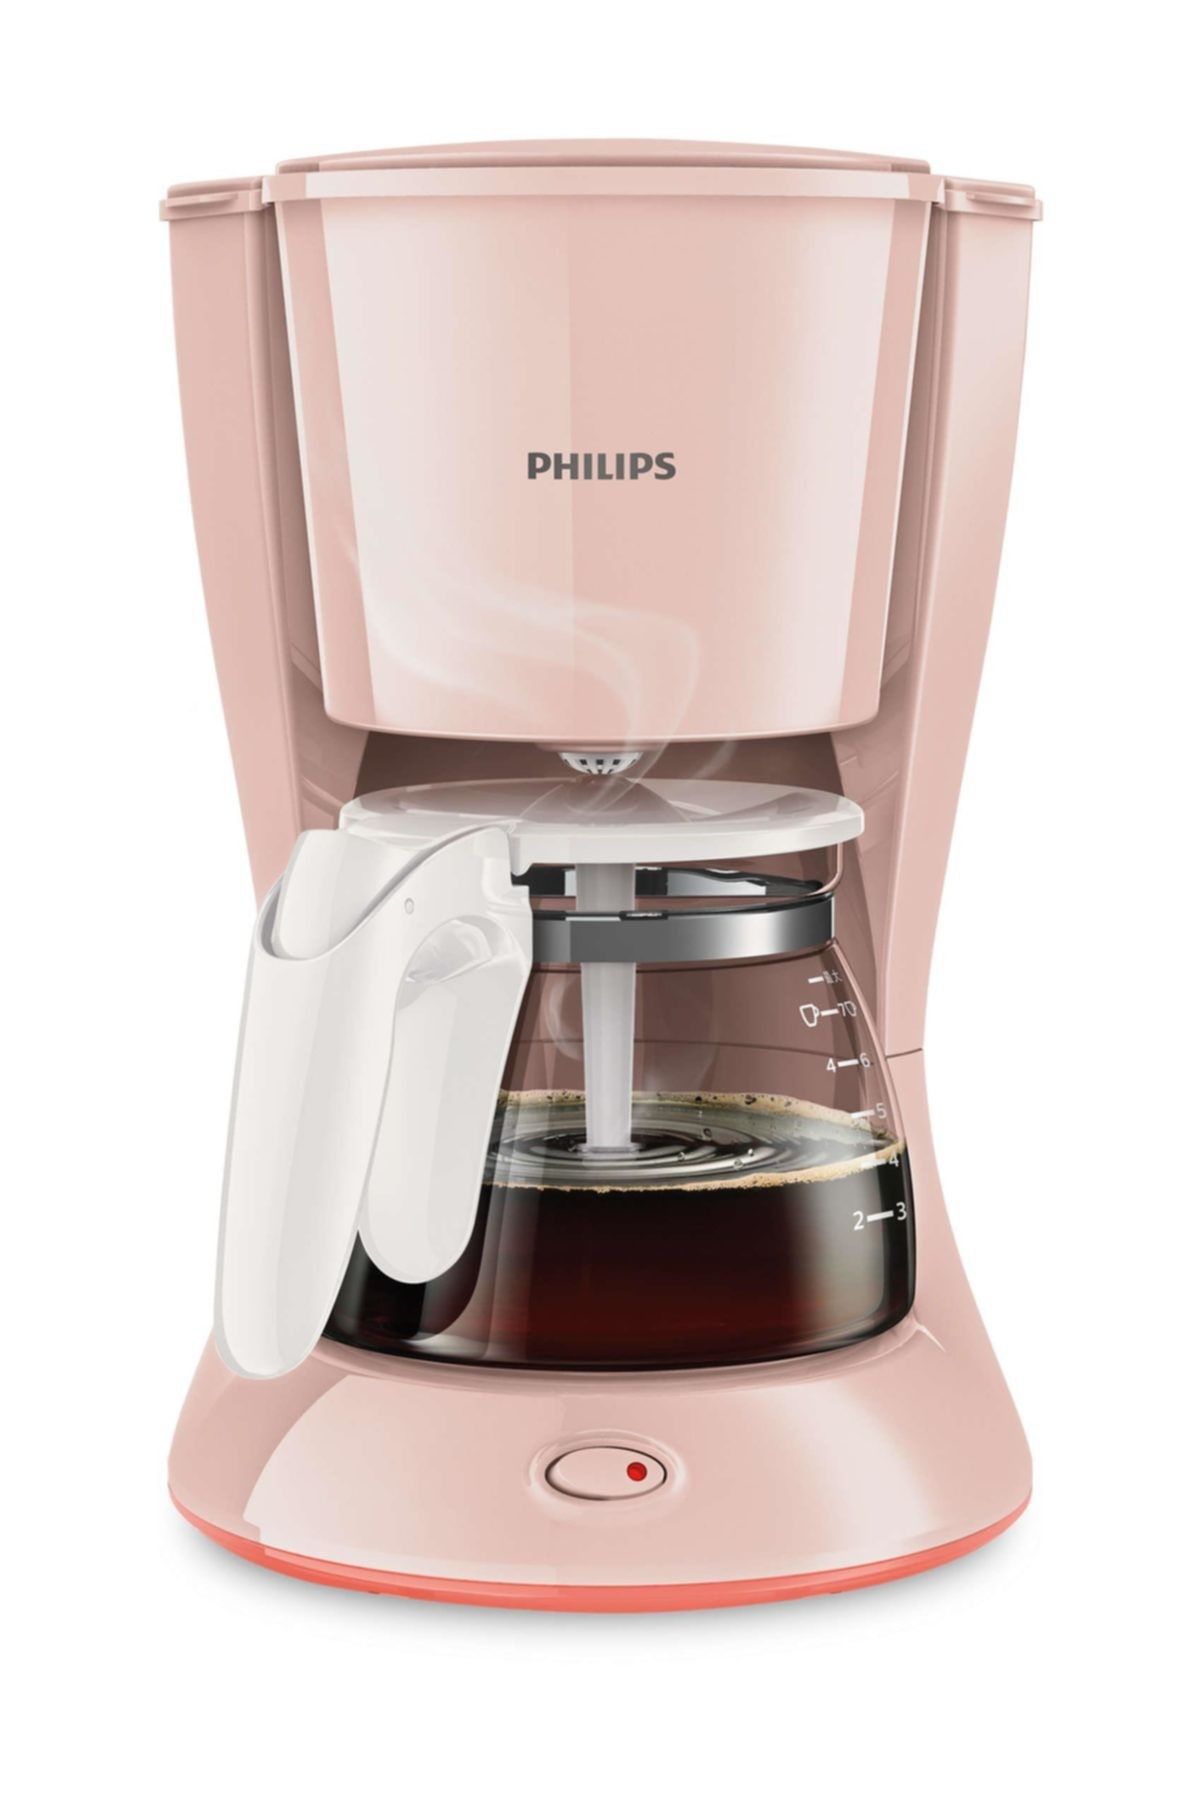 Collection Kahve Yorumları HD7432/30 Trendyol Daily Philips Fiyatı, Makinesi -